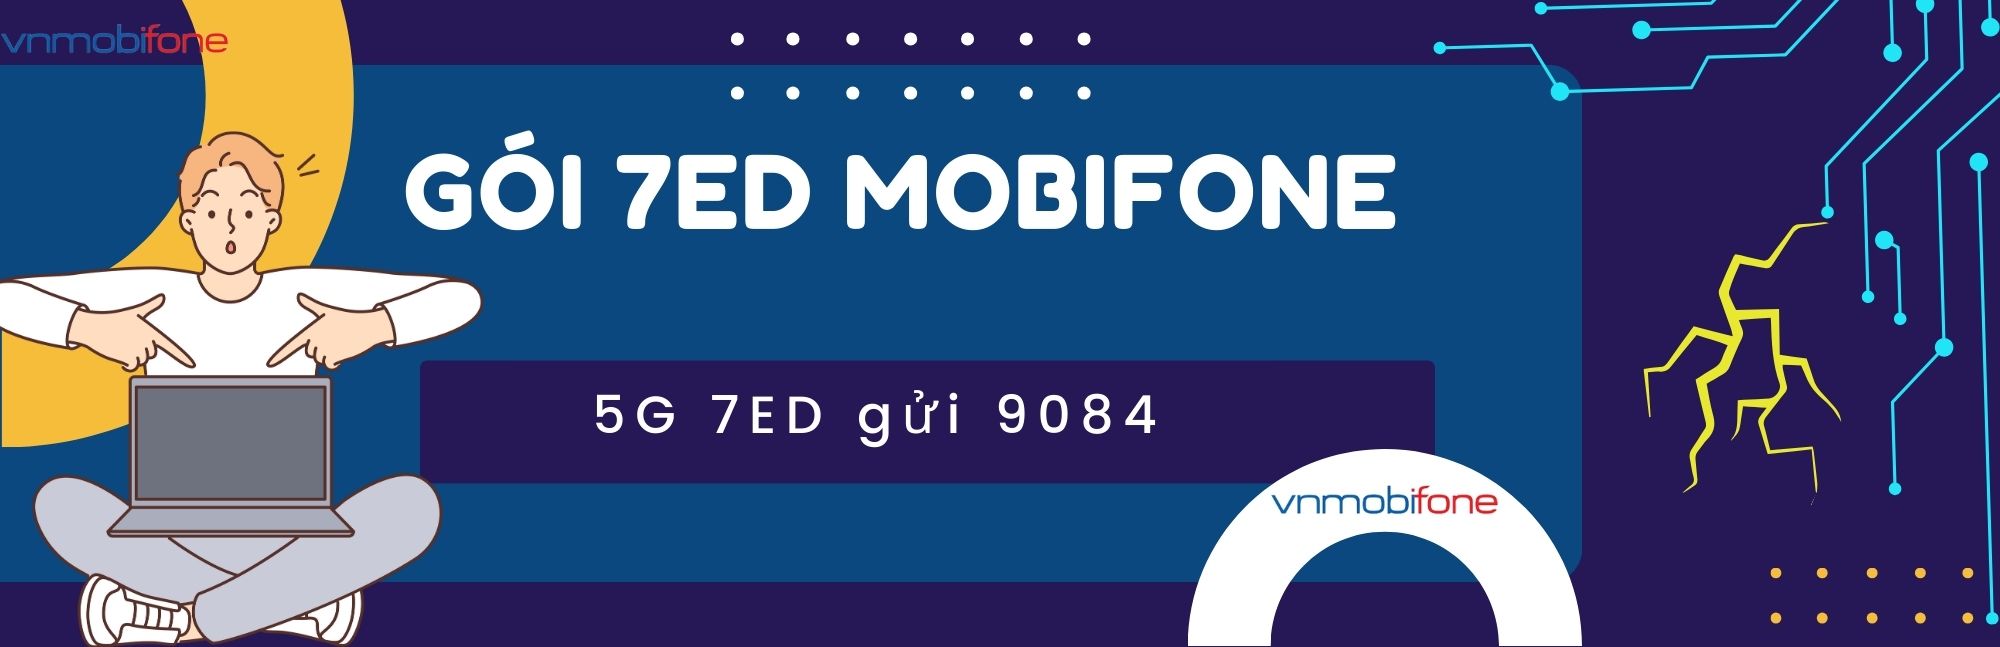 đăng ký gói 7ed mobifone